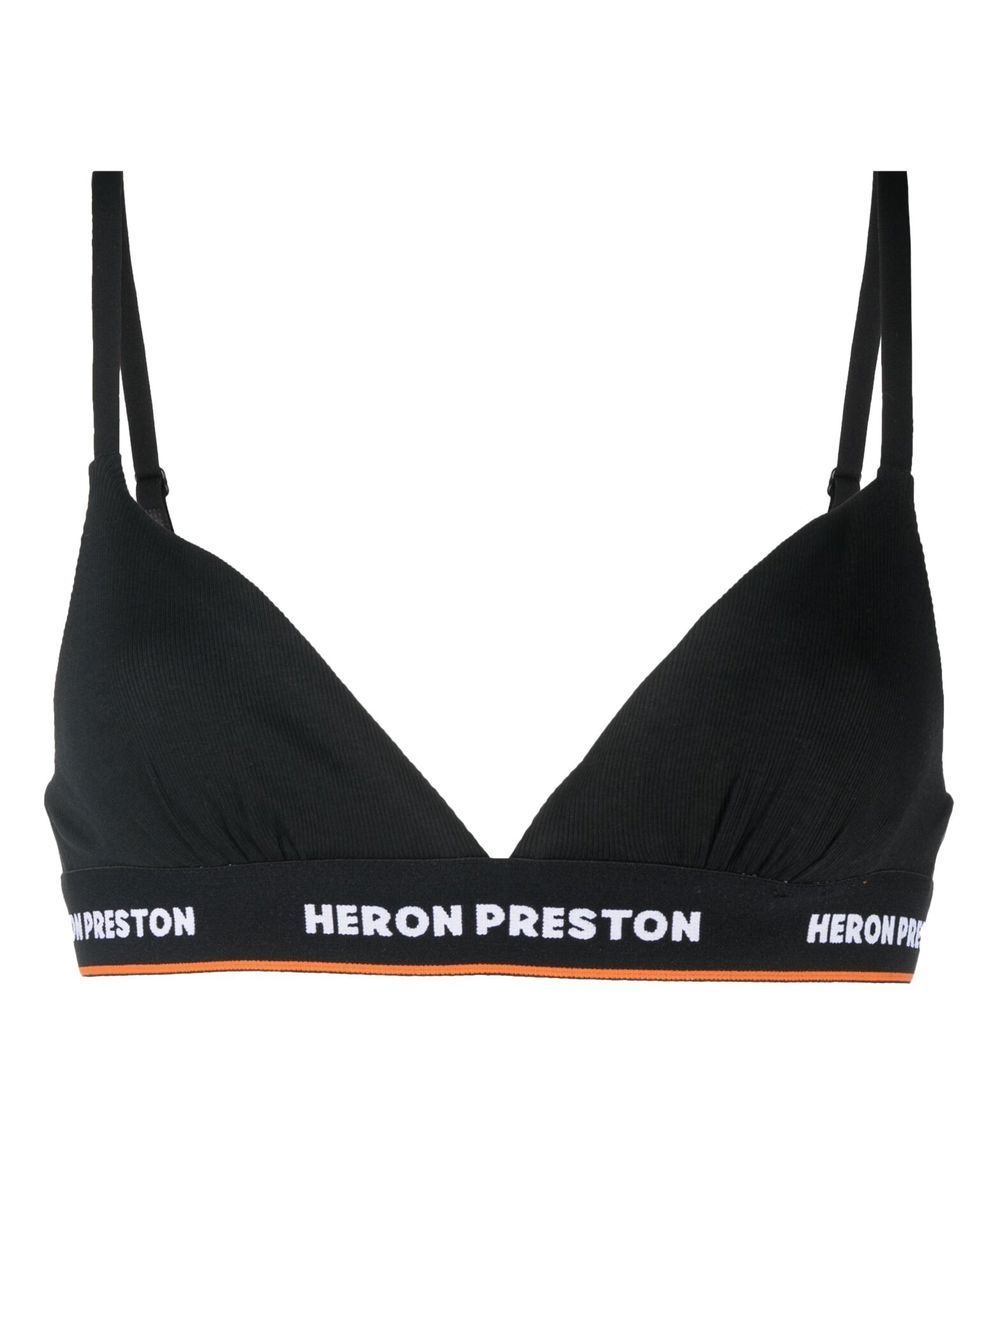 HERON PRESTON HERON PRESTON- Logo Triangle Bra